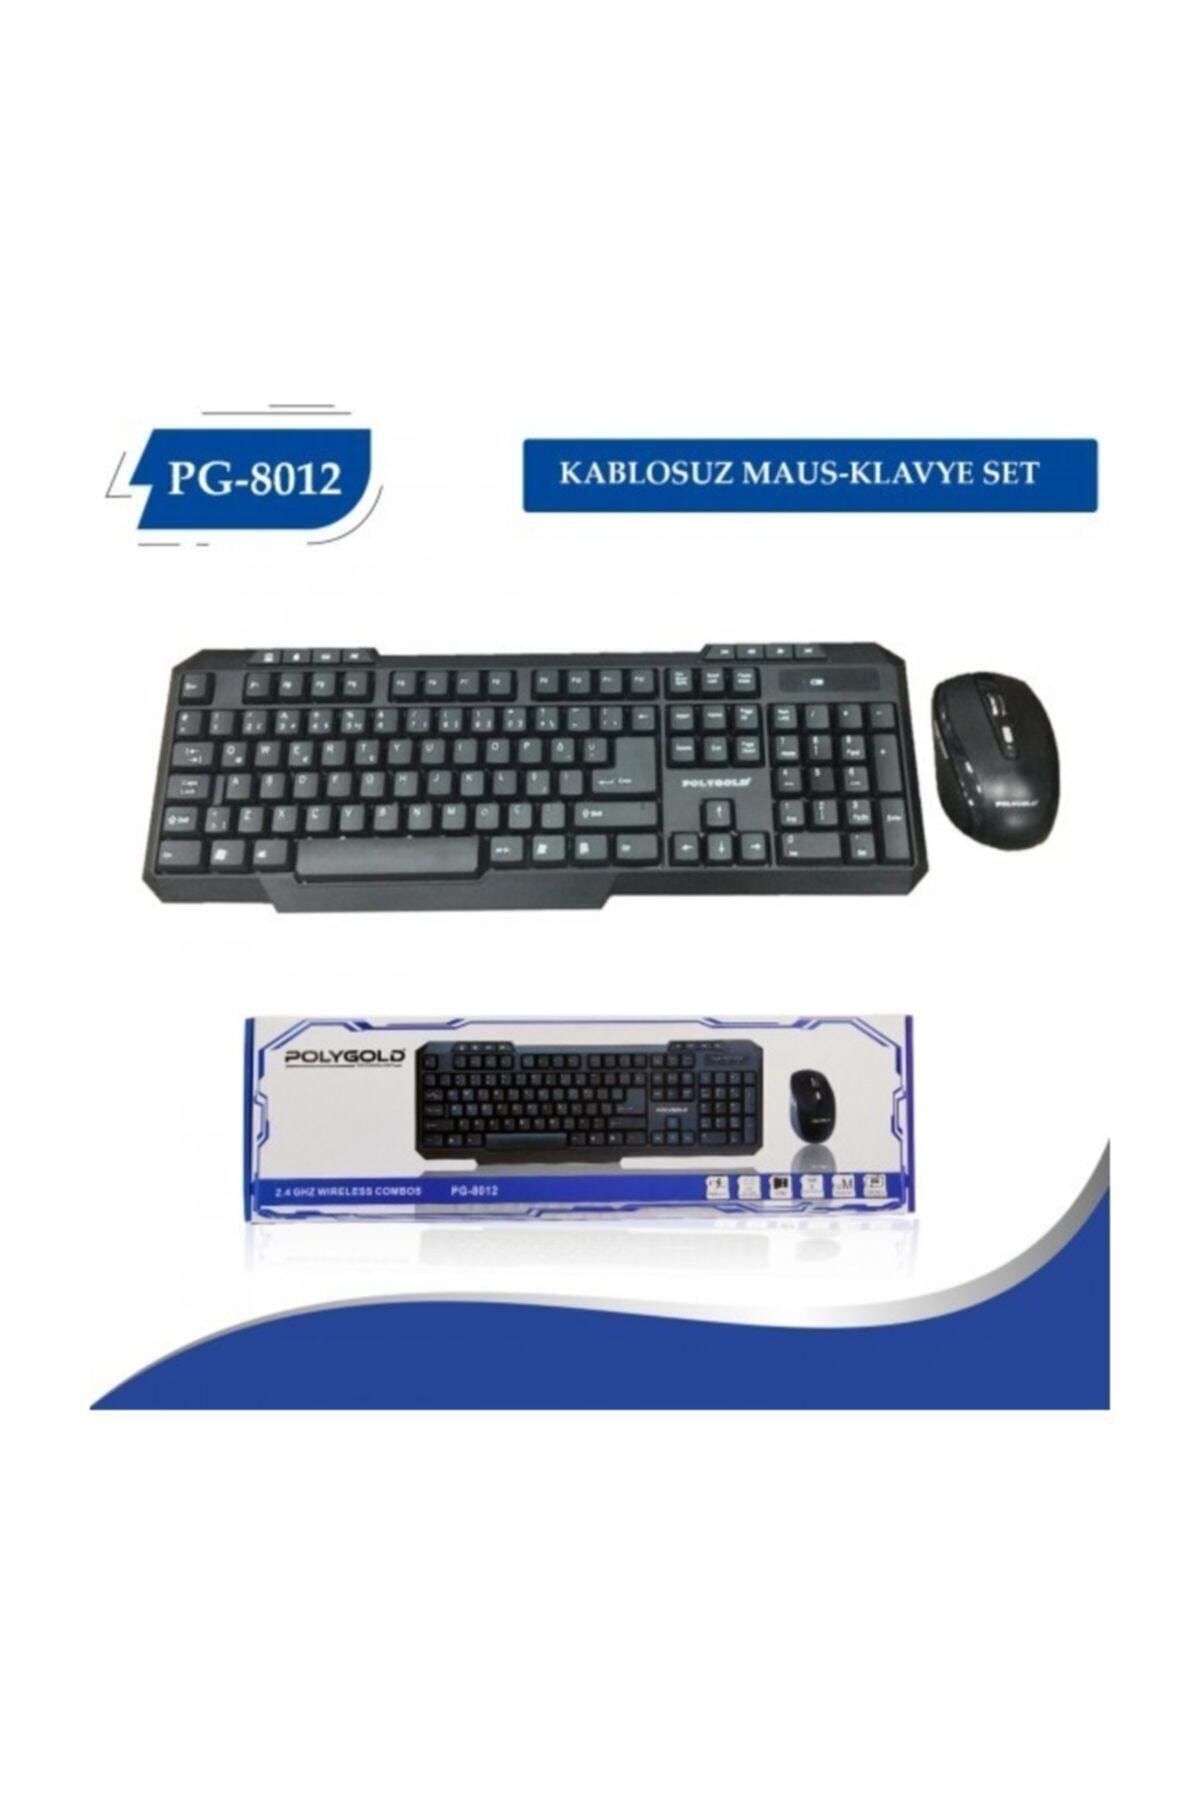 Polygold Pg-8012 Kablosuz Wireless Keyboard Klavye Mouse Set Aynı Gün Ücretsiz Kargo!!!